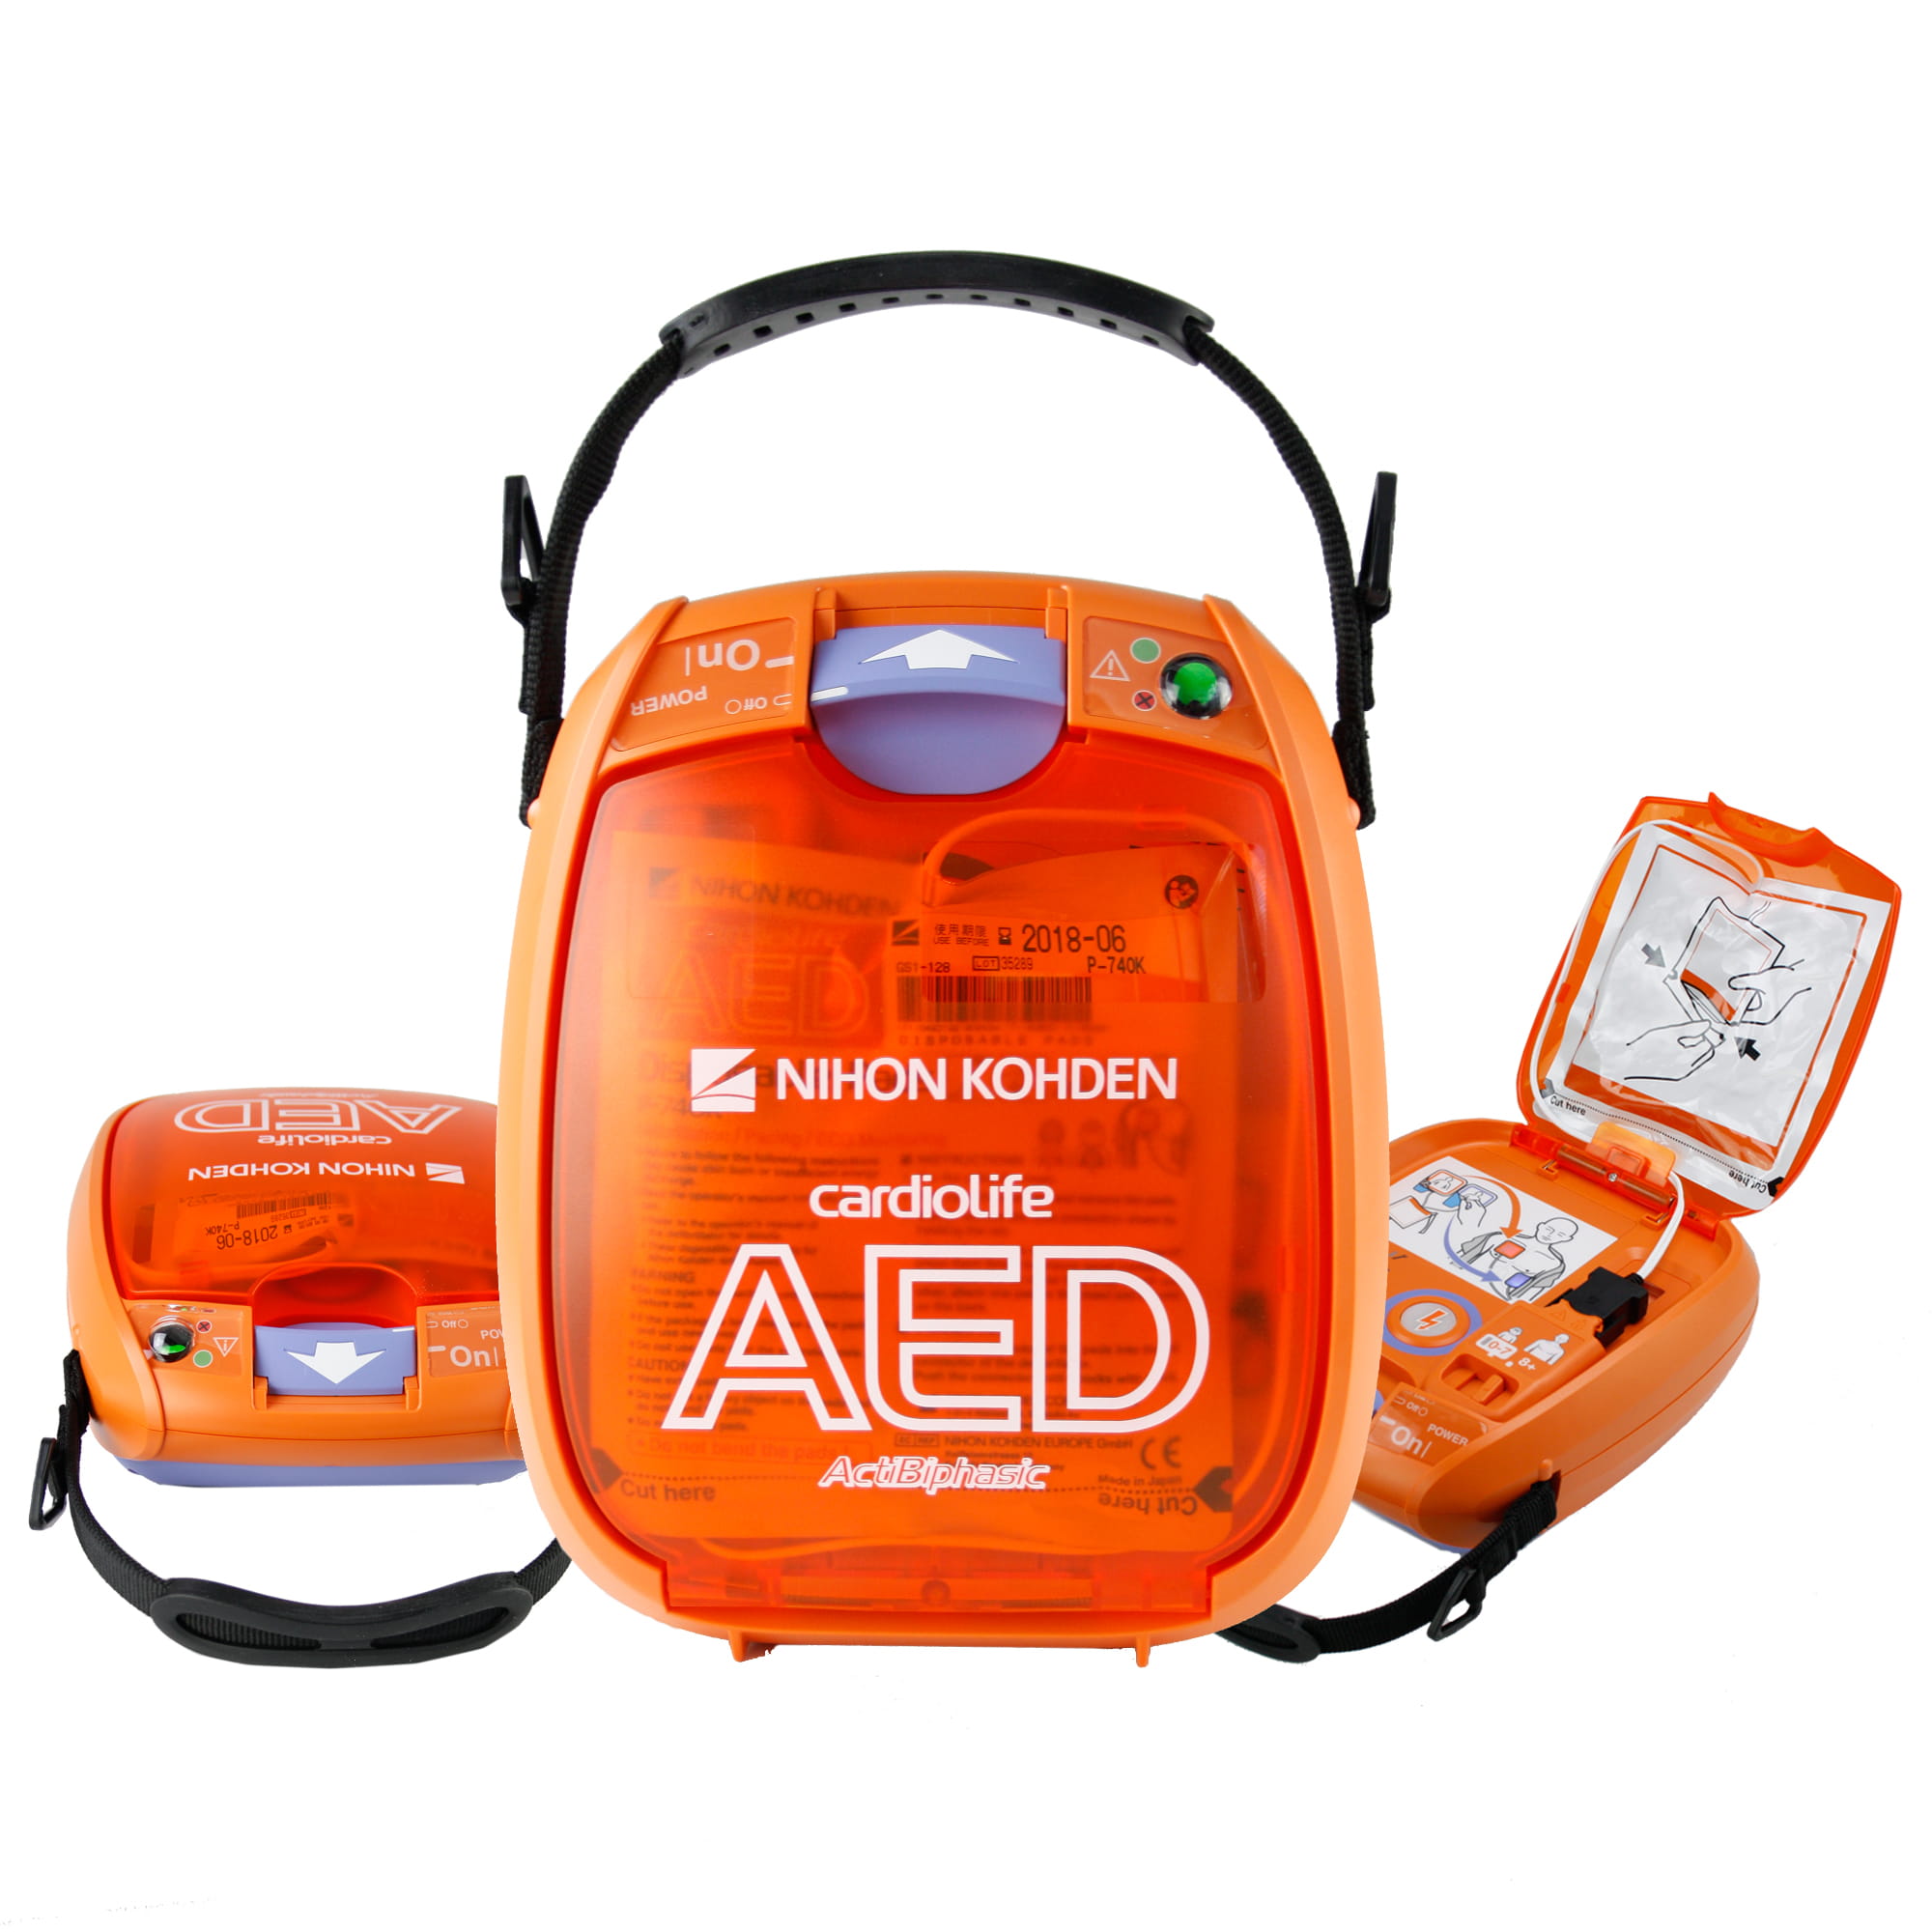 Nihon Kohden Cardiolife AED-3100 Defibrillator